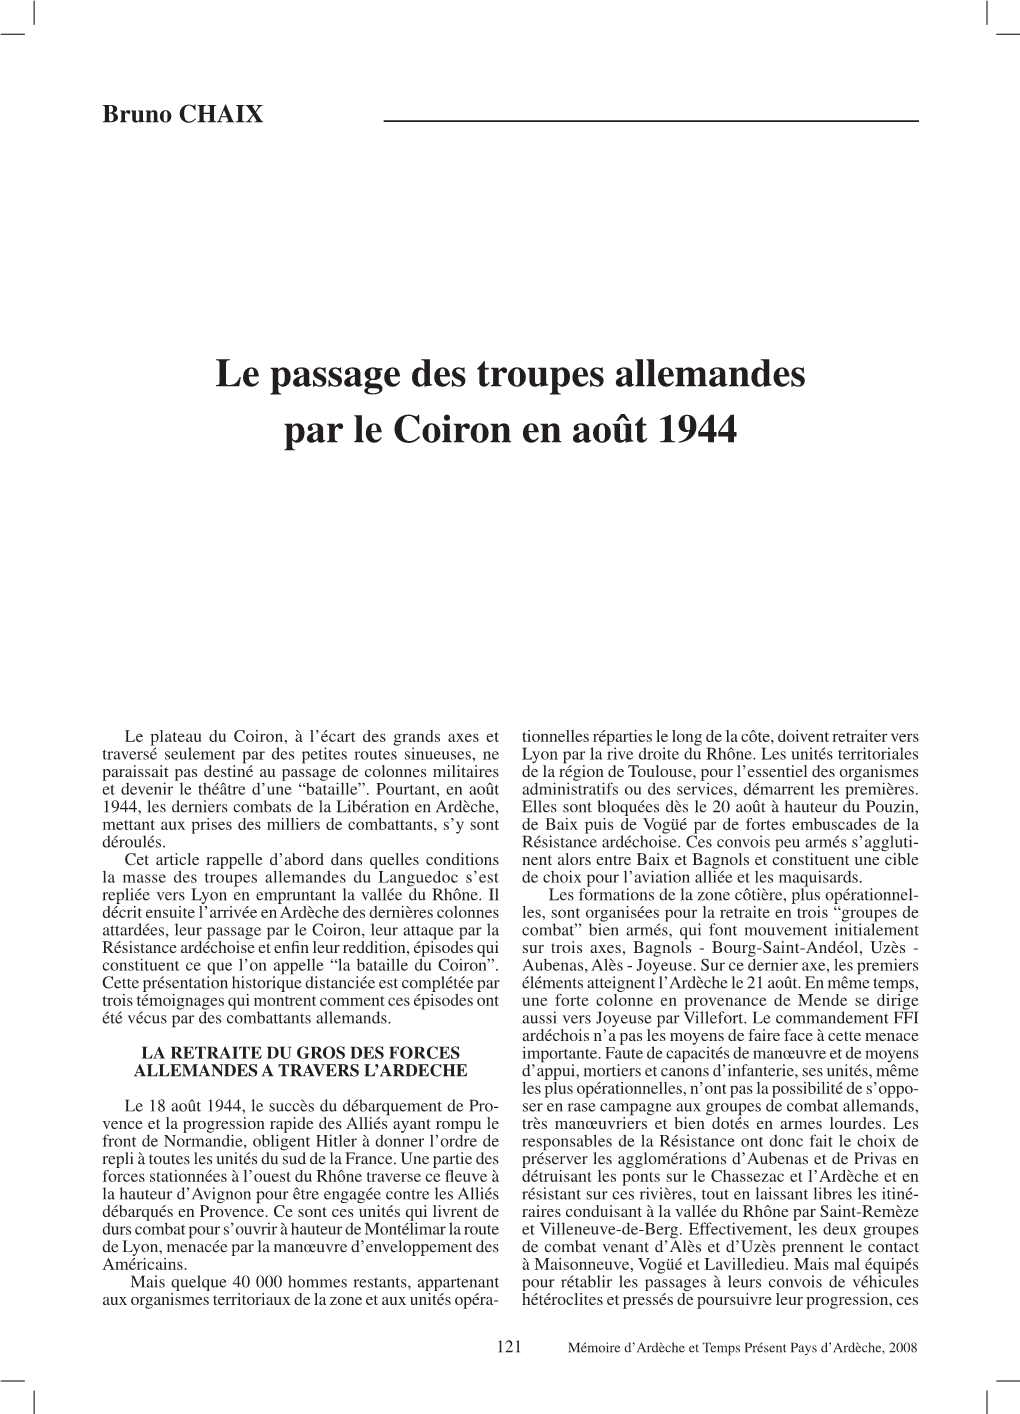 Le Passage Des Troupes Allemandes Par Le Coiron En Août 1944